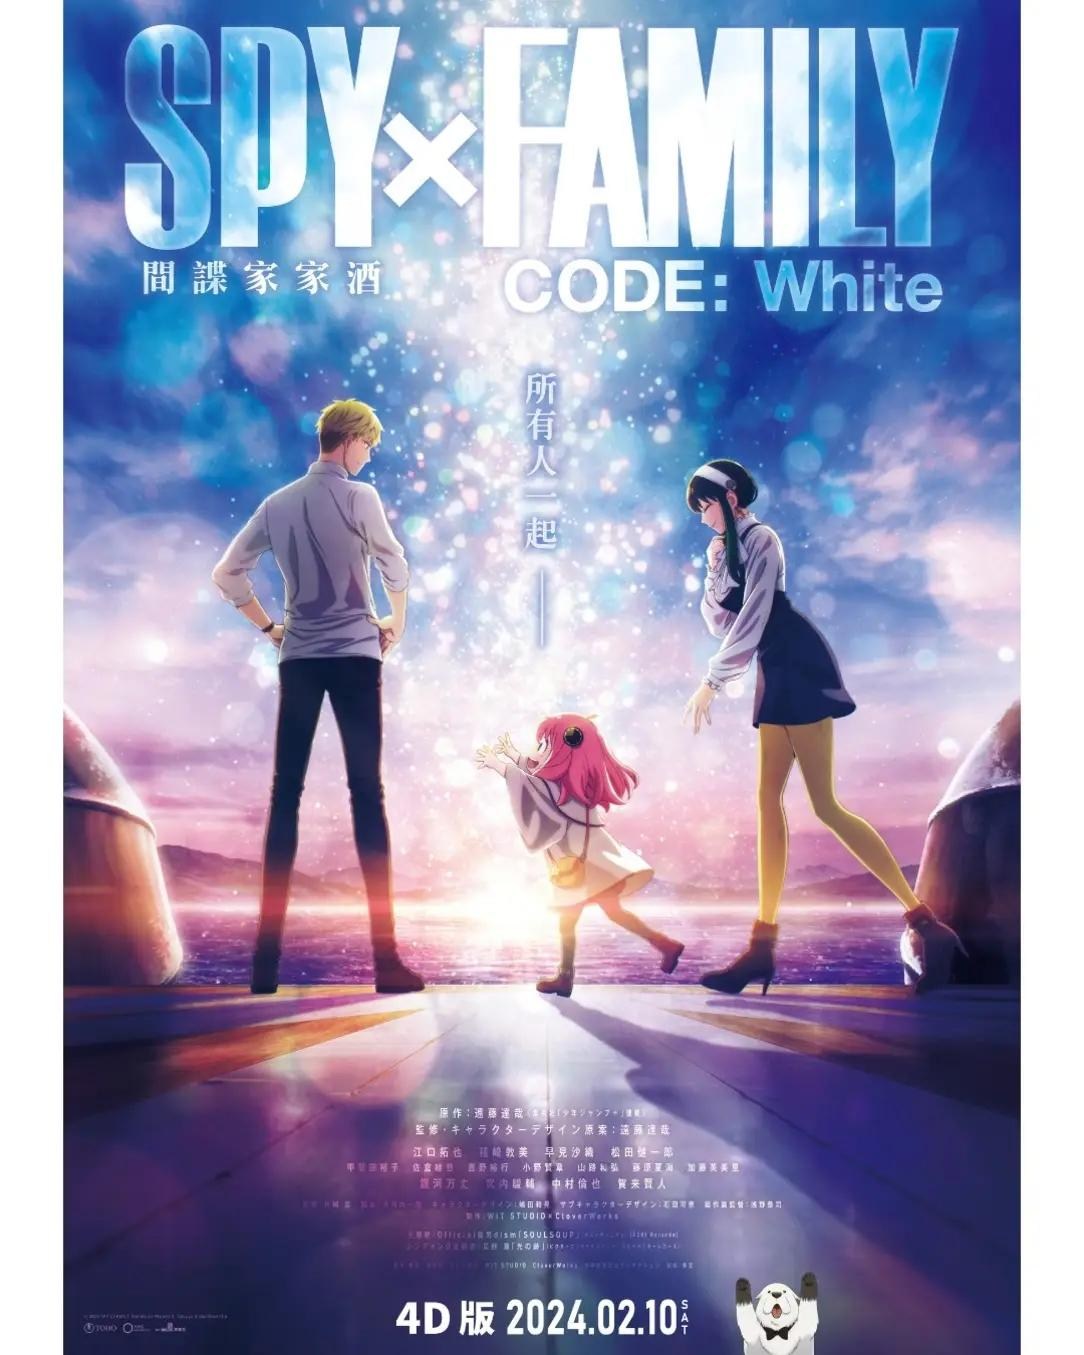 情報】劇場版《SPY x FAMILY CODE: White》MX4D＆4DX 日本2/10 上映 